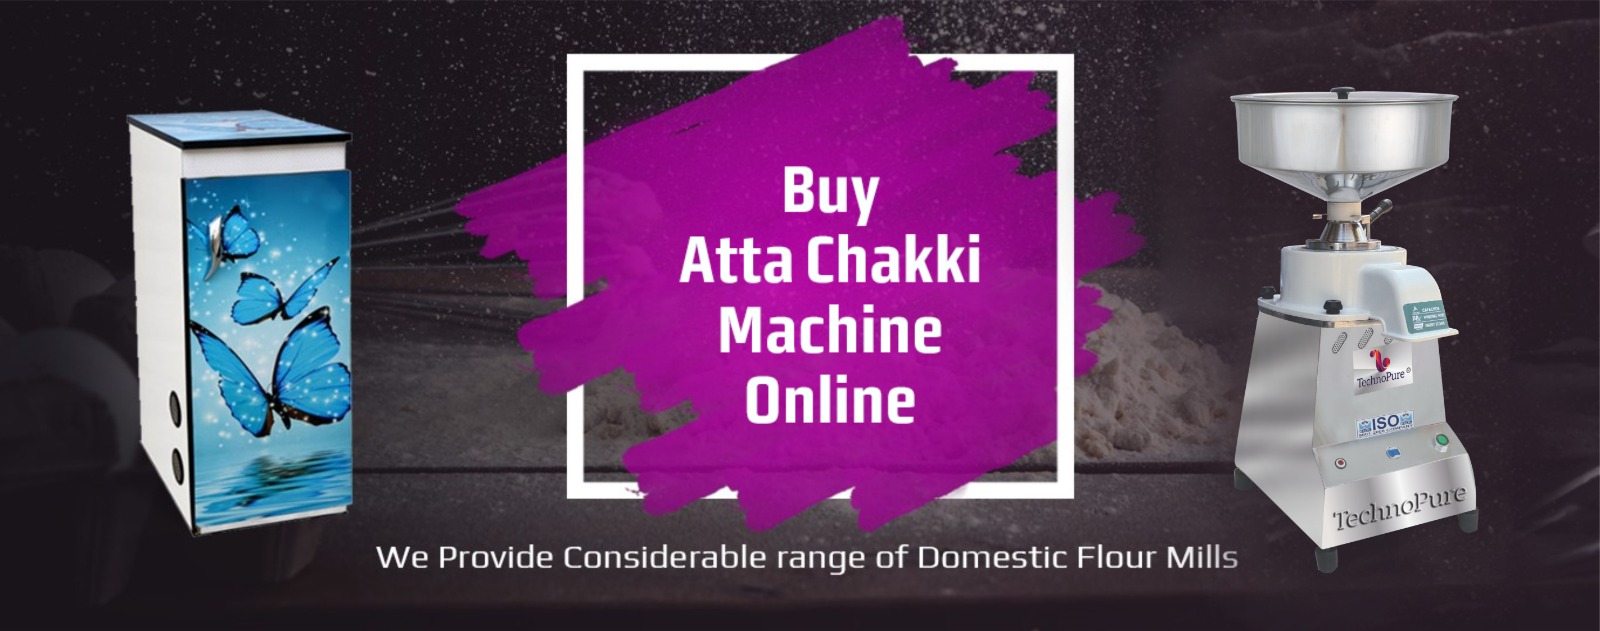 Technopure Enterprises  |  Buy Atta Chakki Online |  Domestic Flour Mill | Domestic Atta Chakki Machine